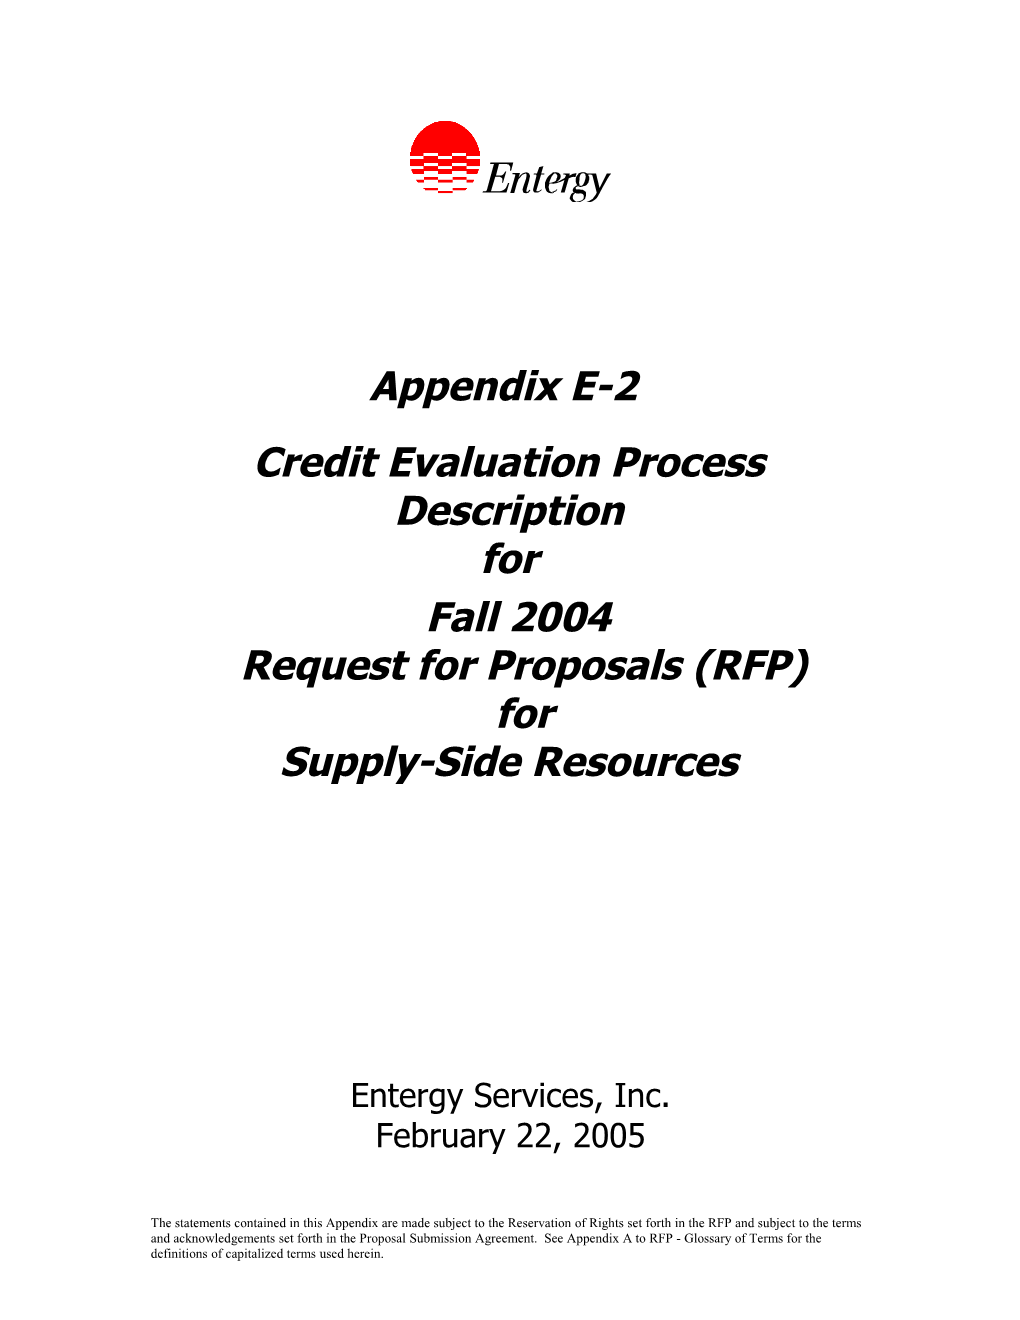 Appendix E-2 Credit Evaluation Process Description